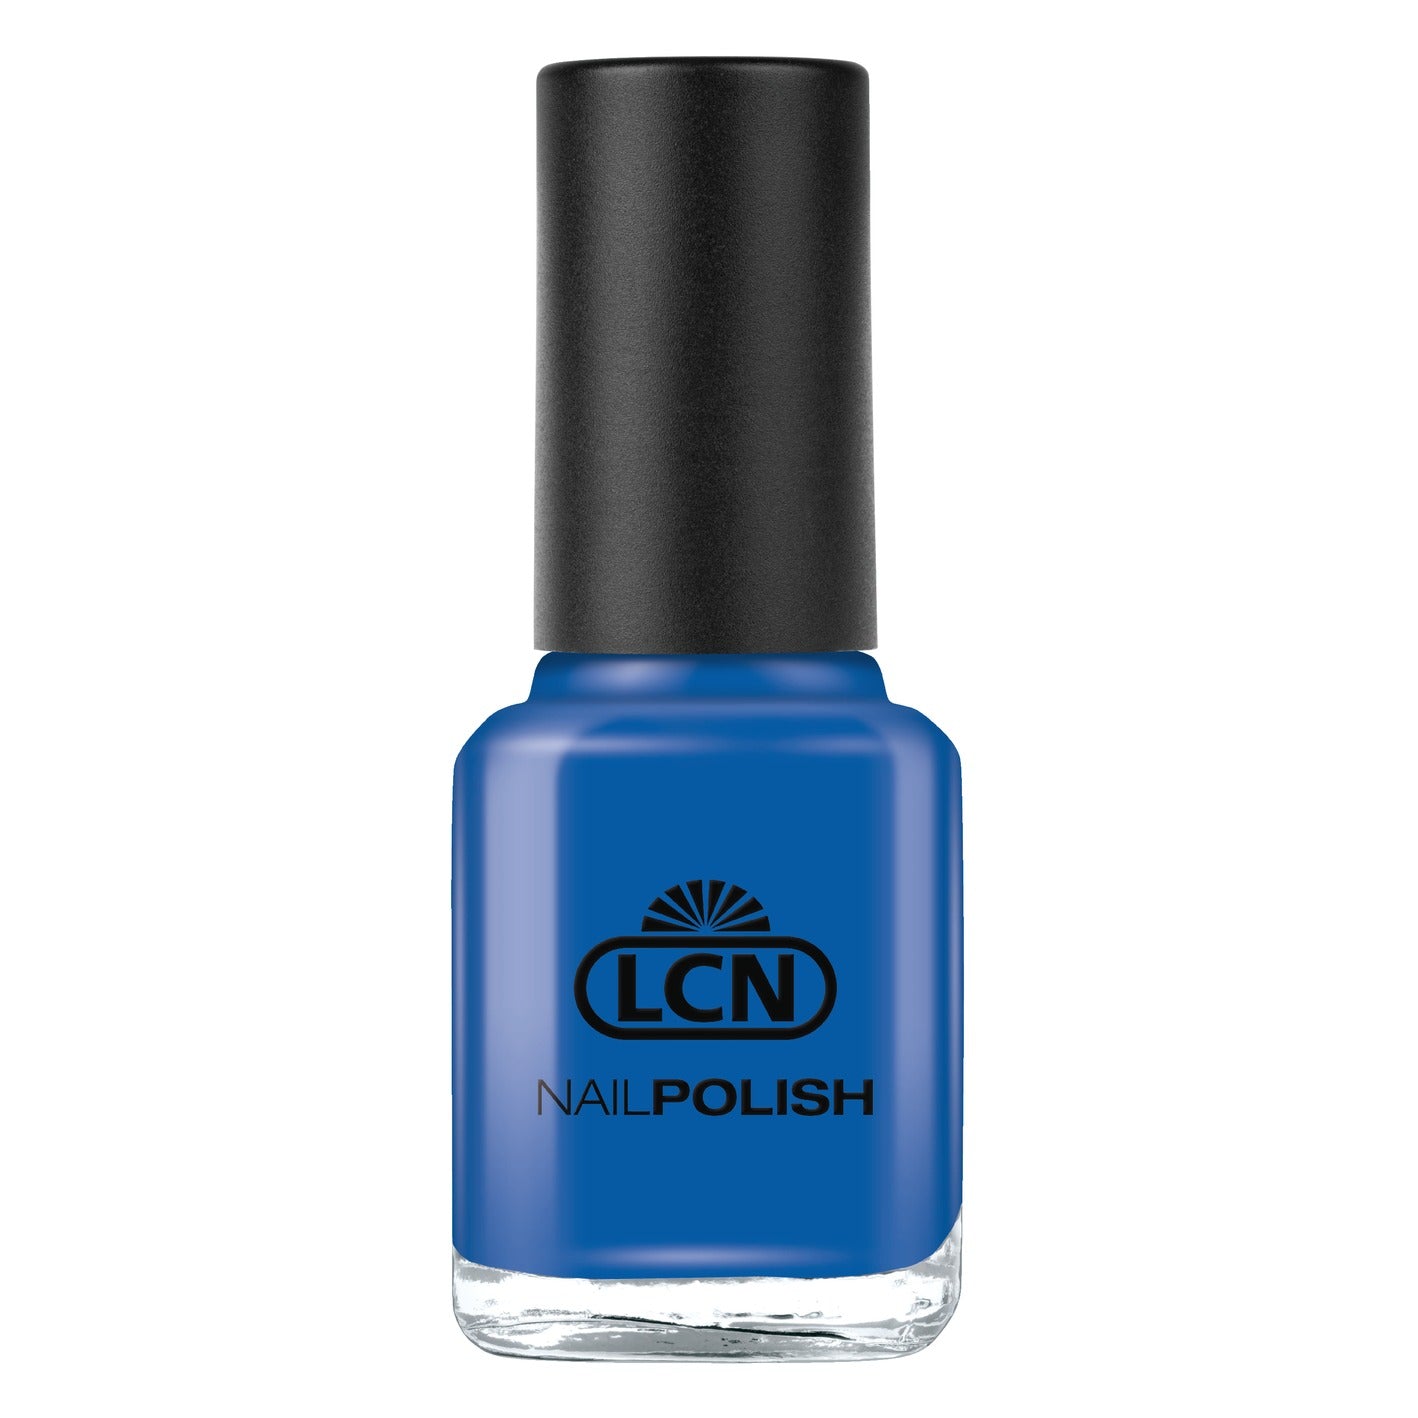 LCN Nail Polish, 205 Ocean Blue, 8ml